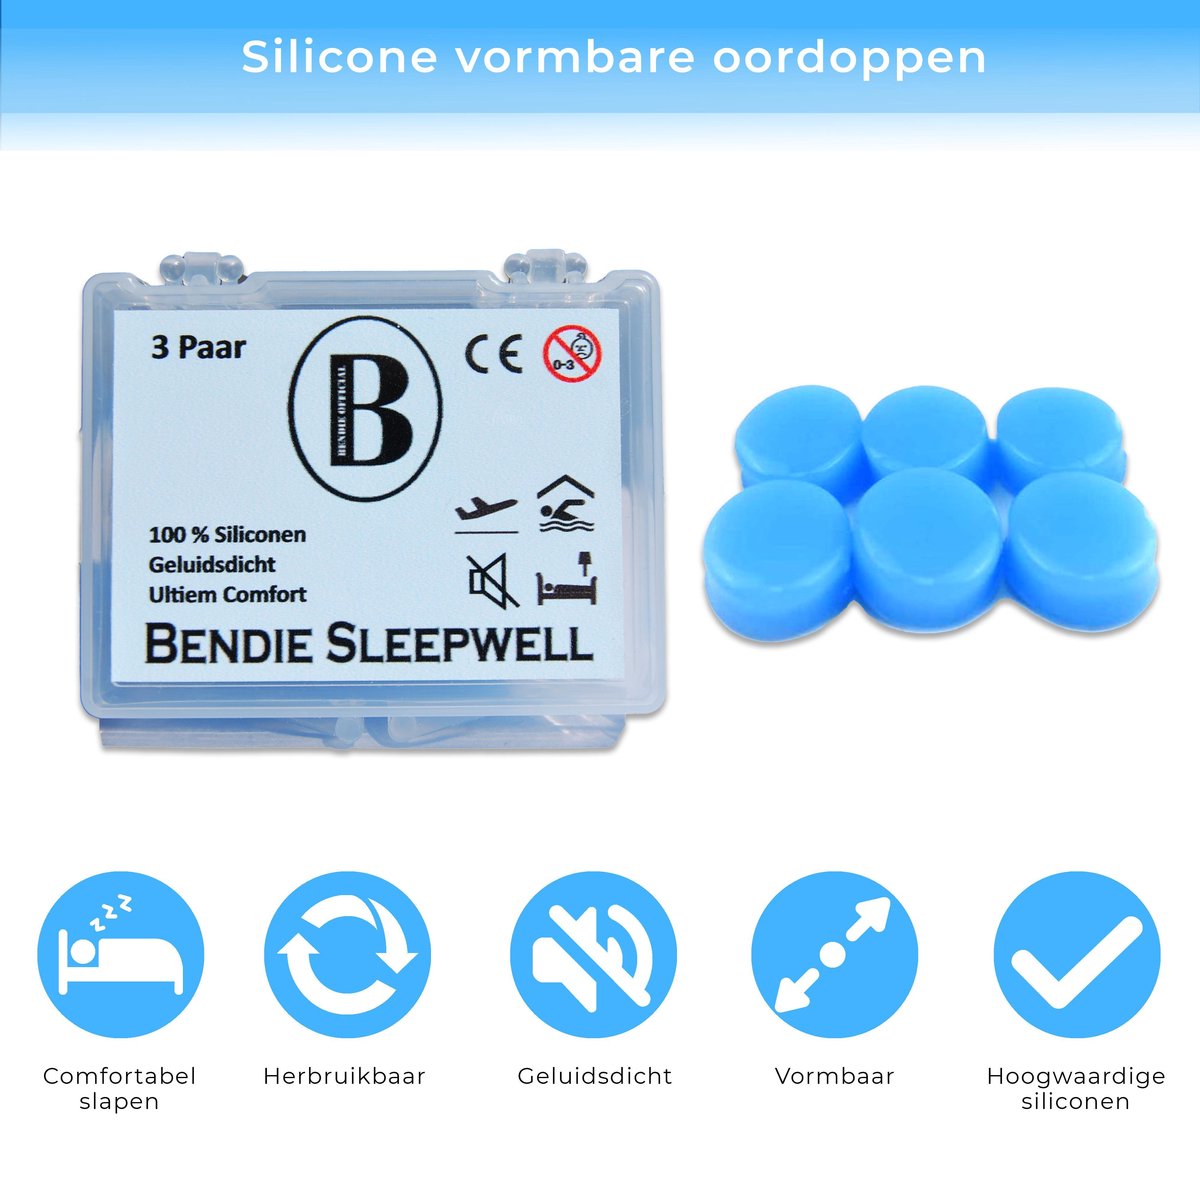 Bendie Premium Siliconen Vormbare Oordoppen - Slapen - Tegen Geluidsoverlast en Snurken - Gehoorbescherming - 6 Stuks - Bendie